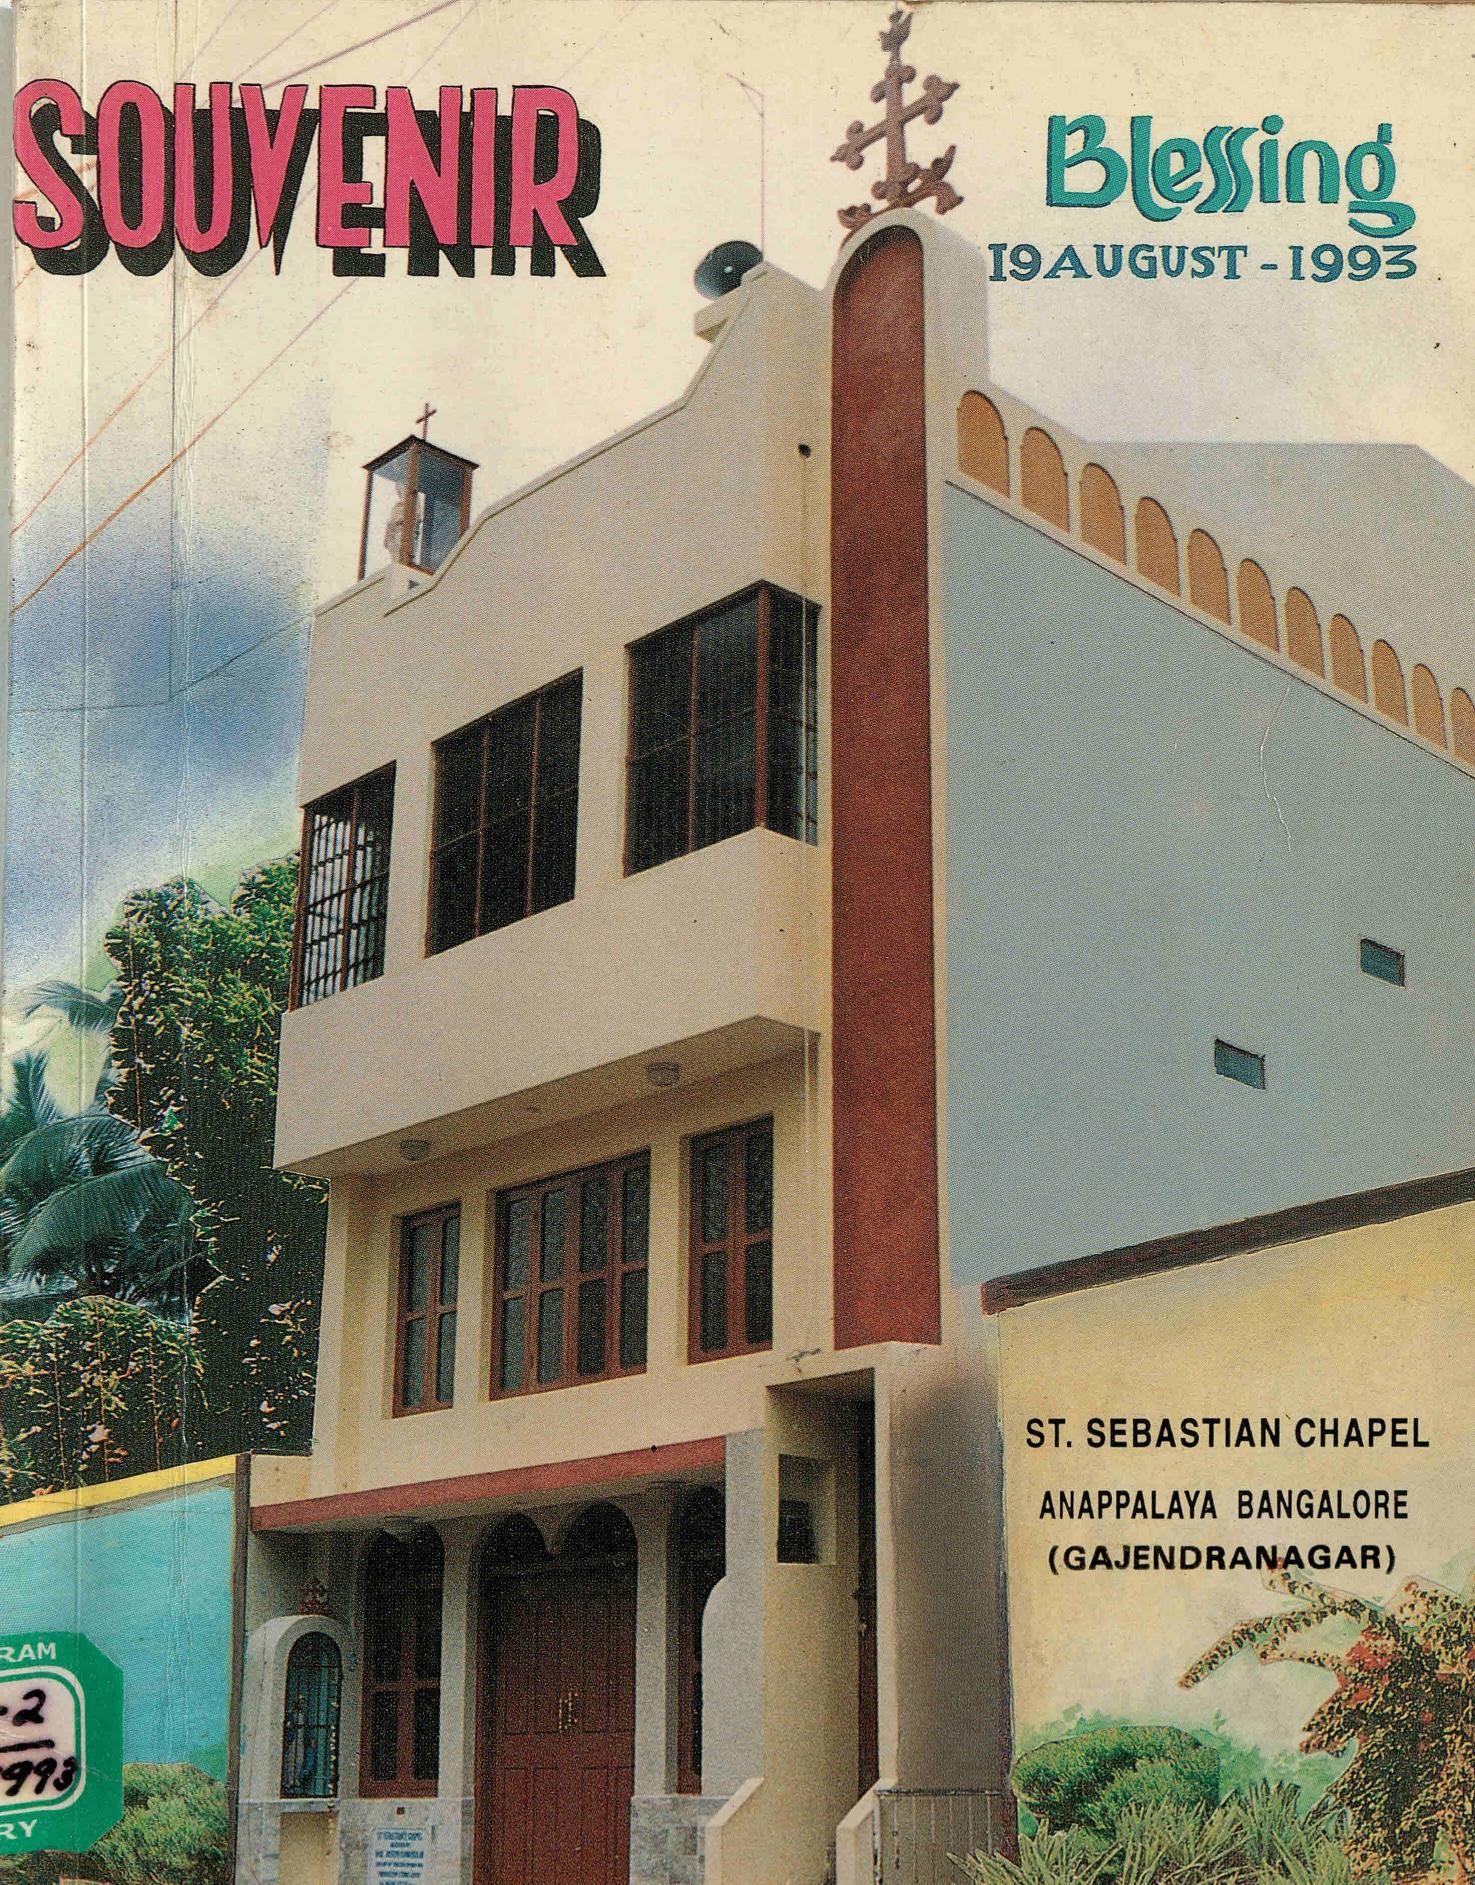 1993 - സെൻ്റ് സെബാസ്റ്റ്യൻ ചാപ്പൽ - ആനപ്പാളയ -
സുവനീർ